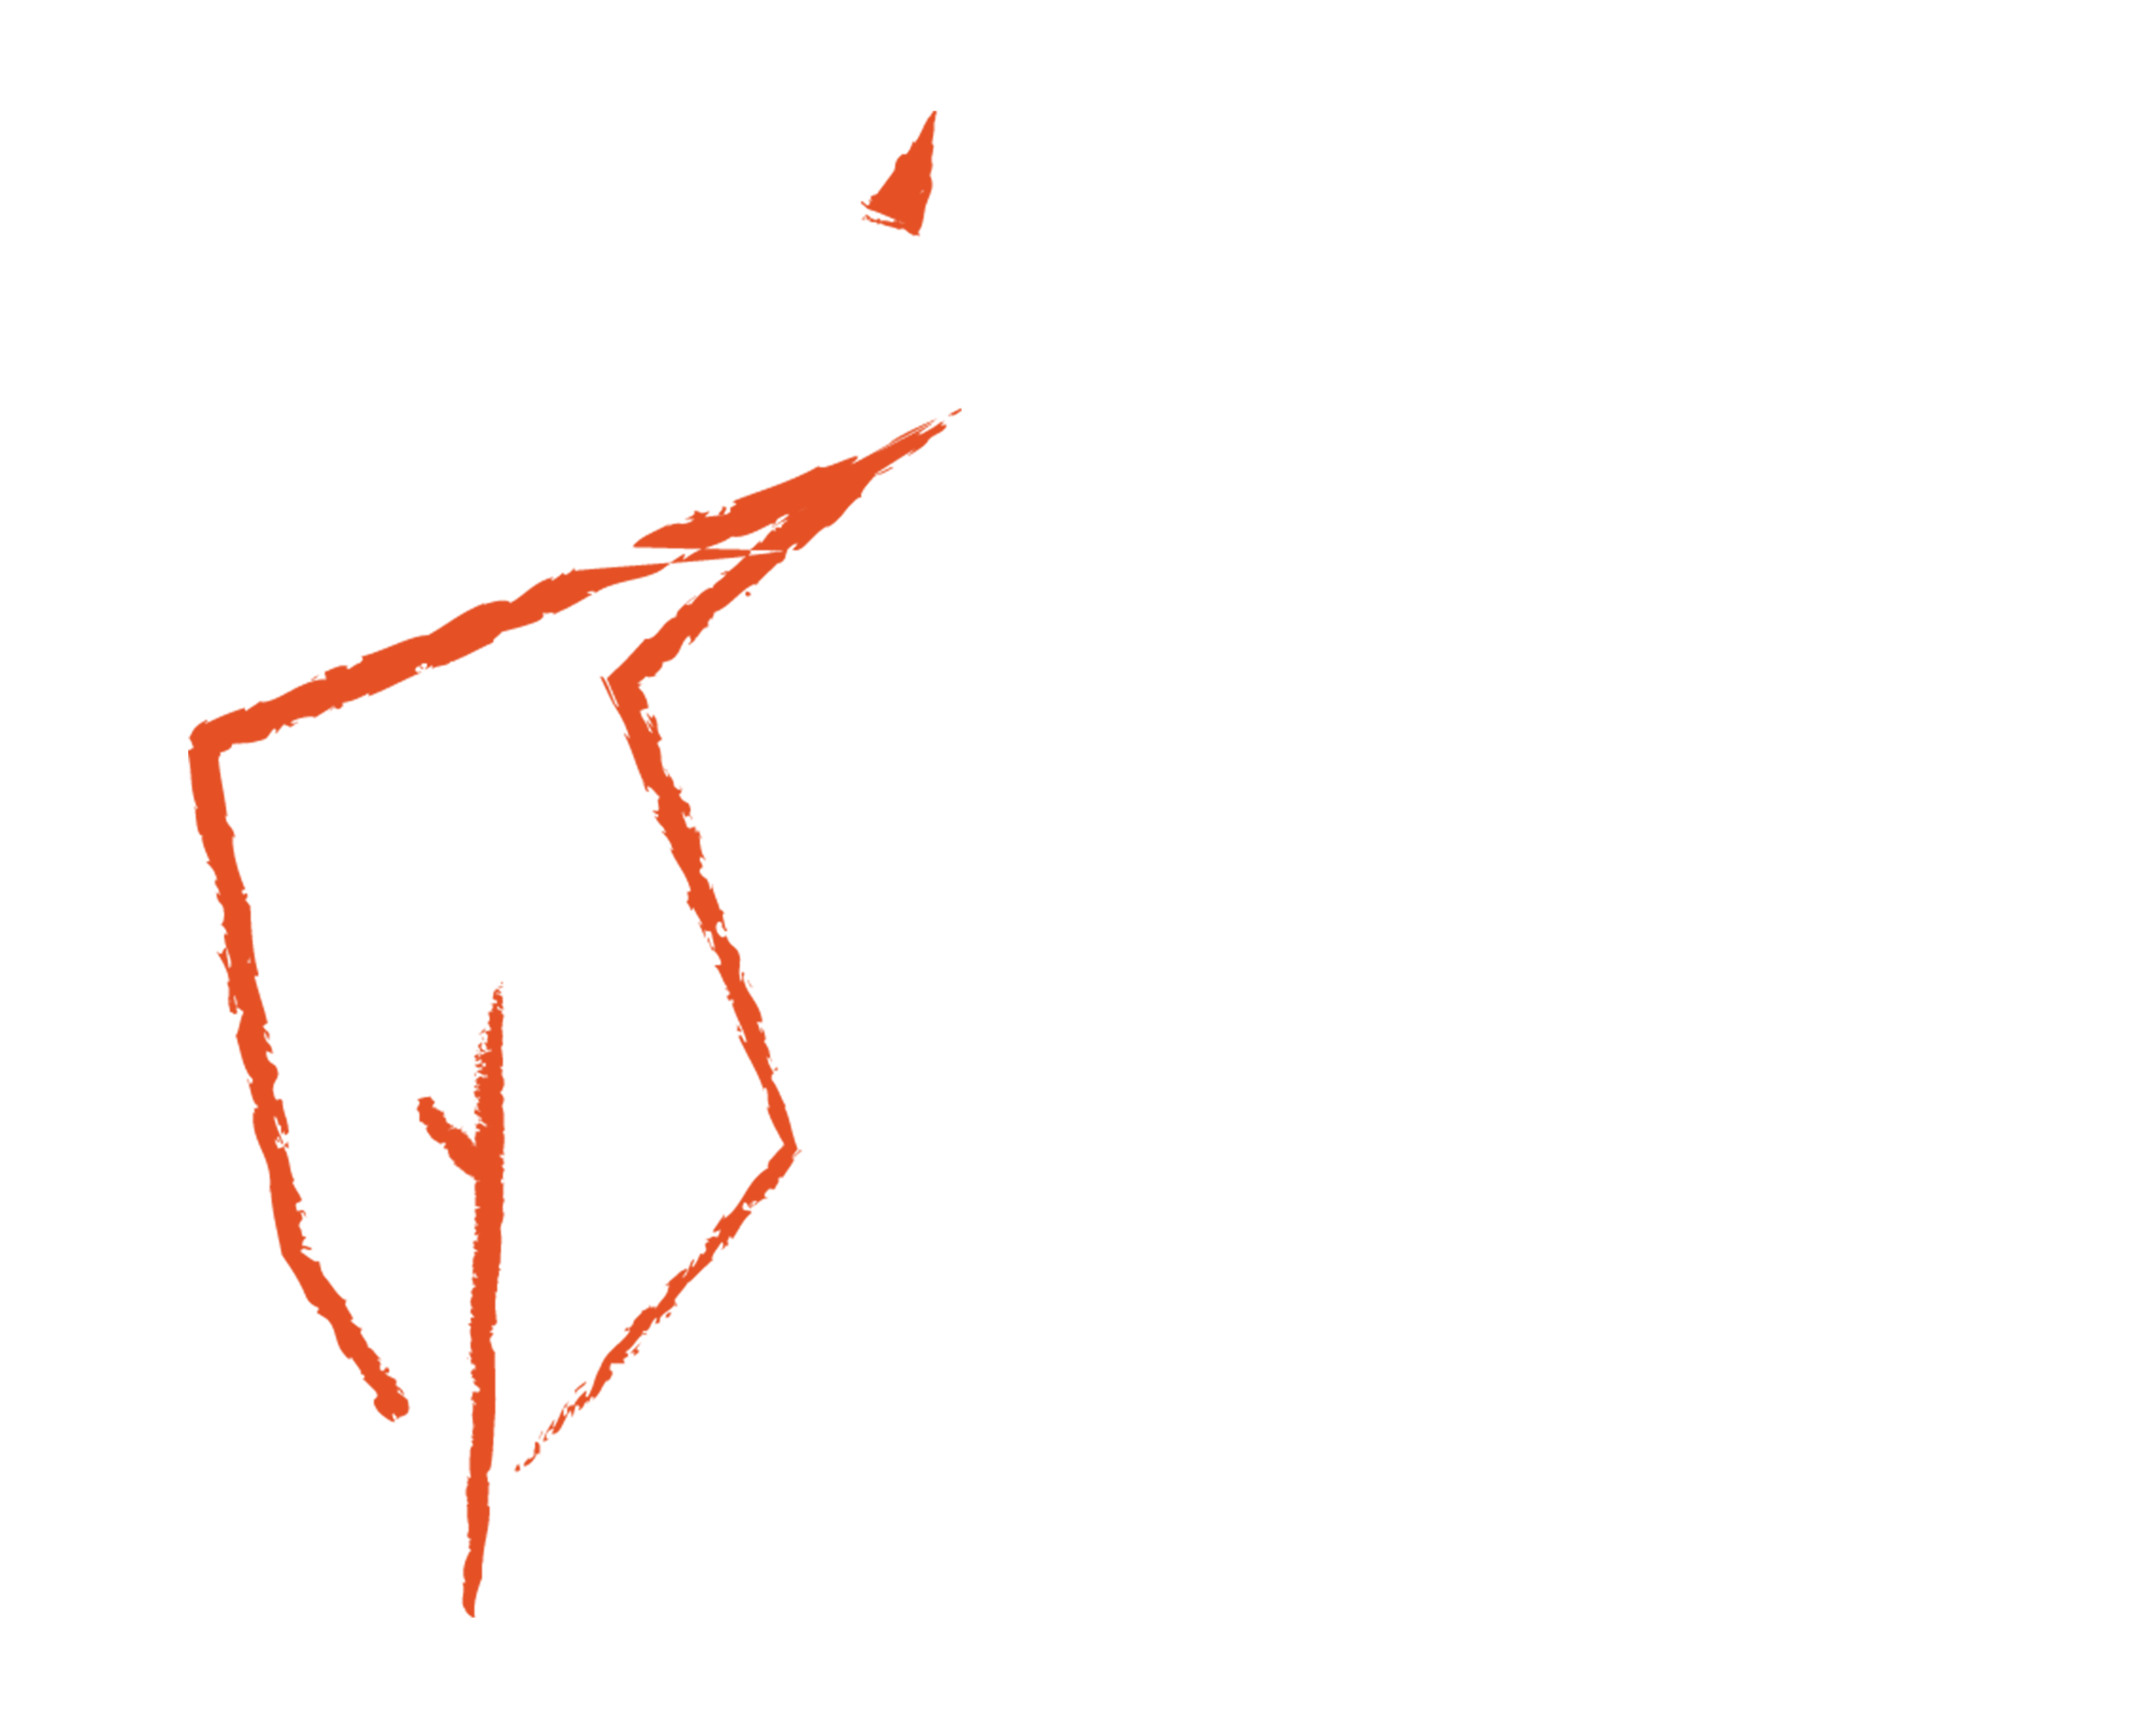 Burning Bush Films